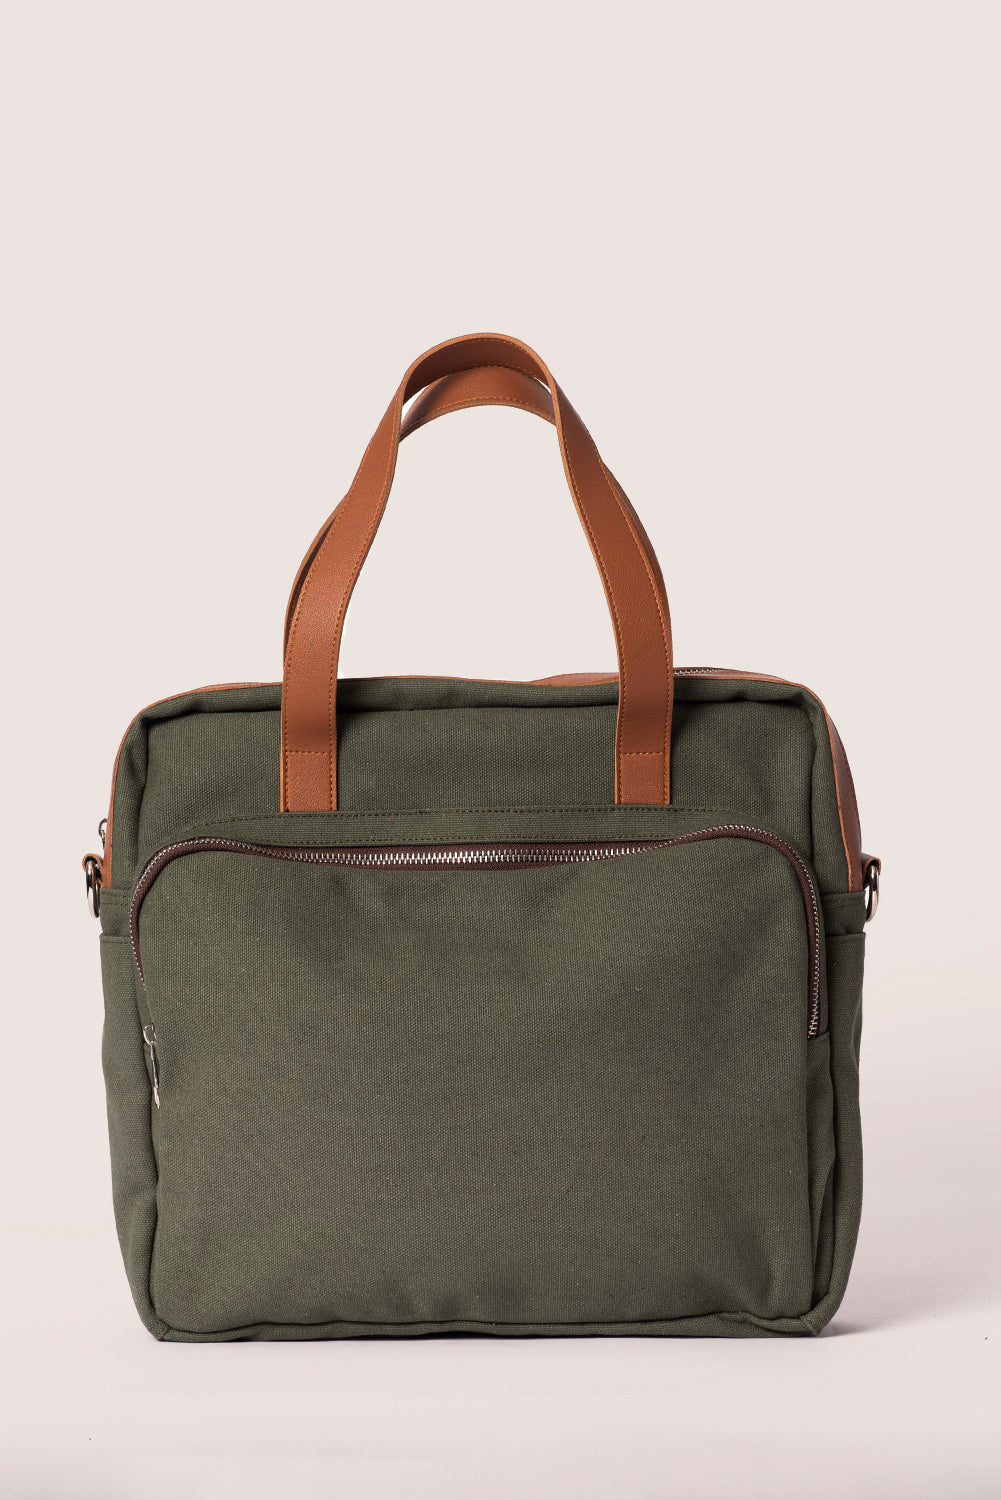 Olive Travel Messenger Bag